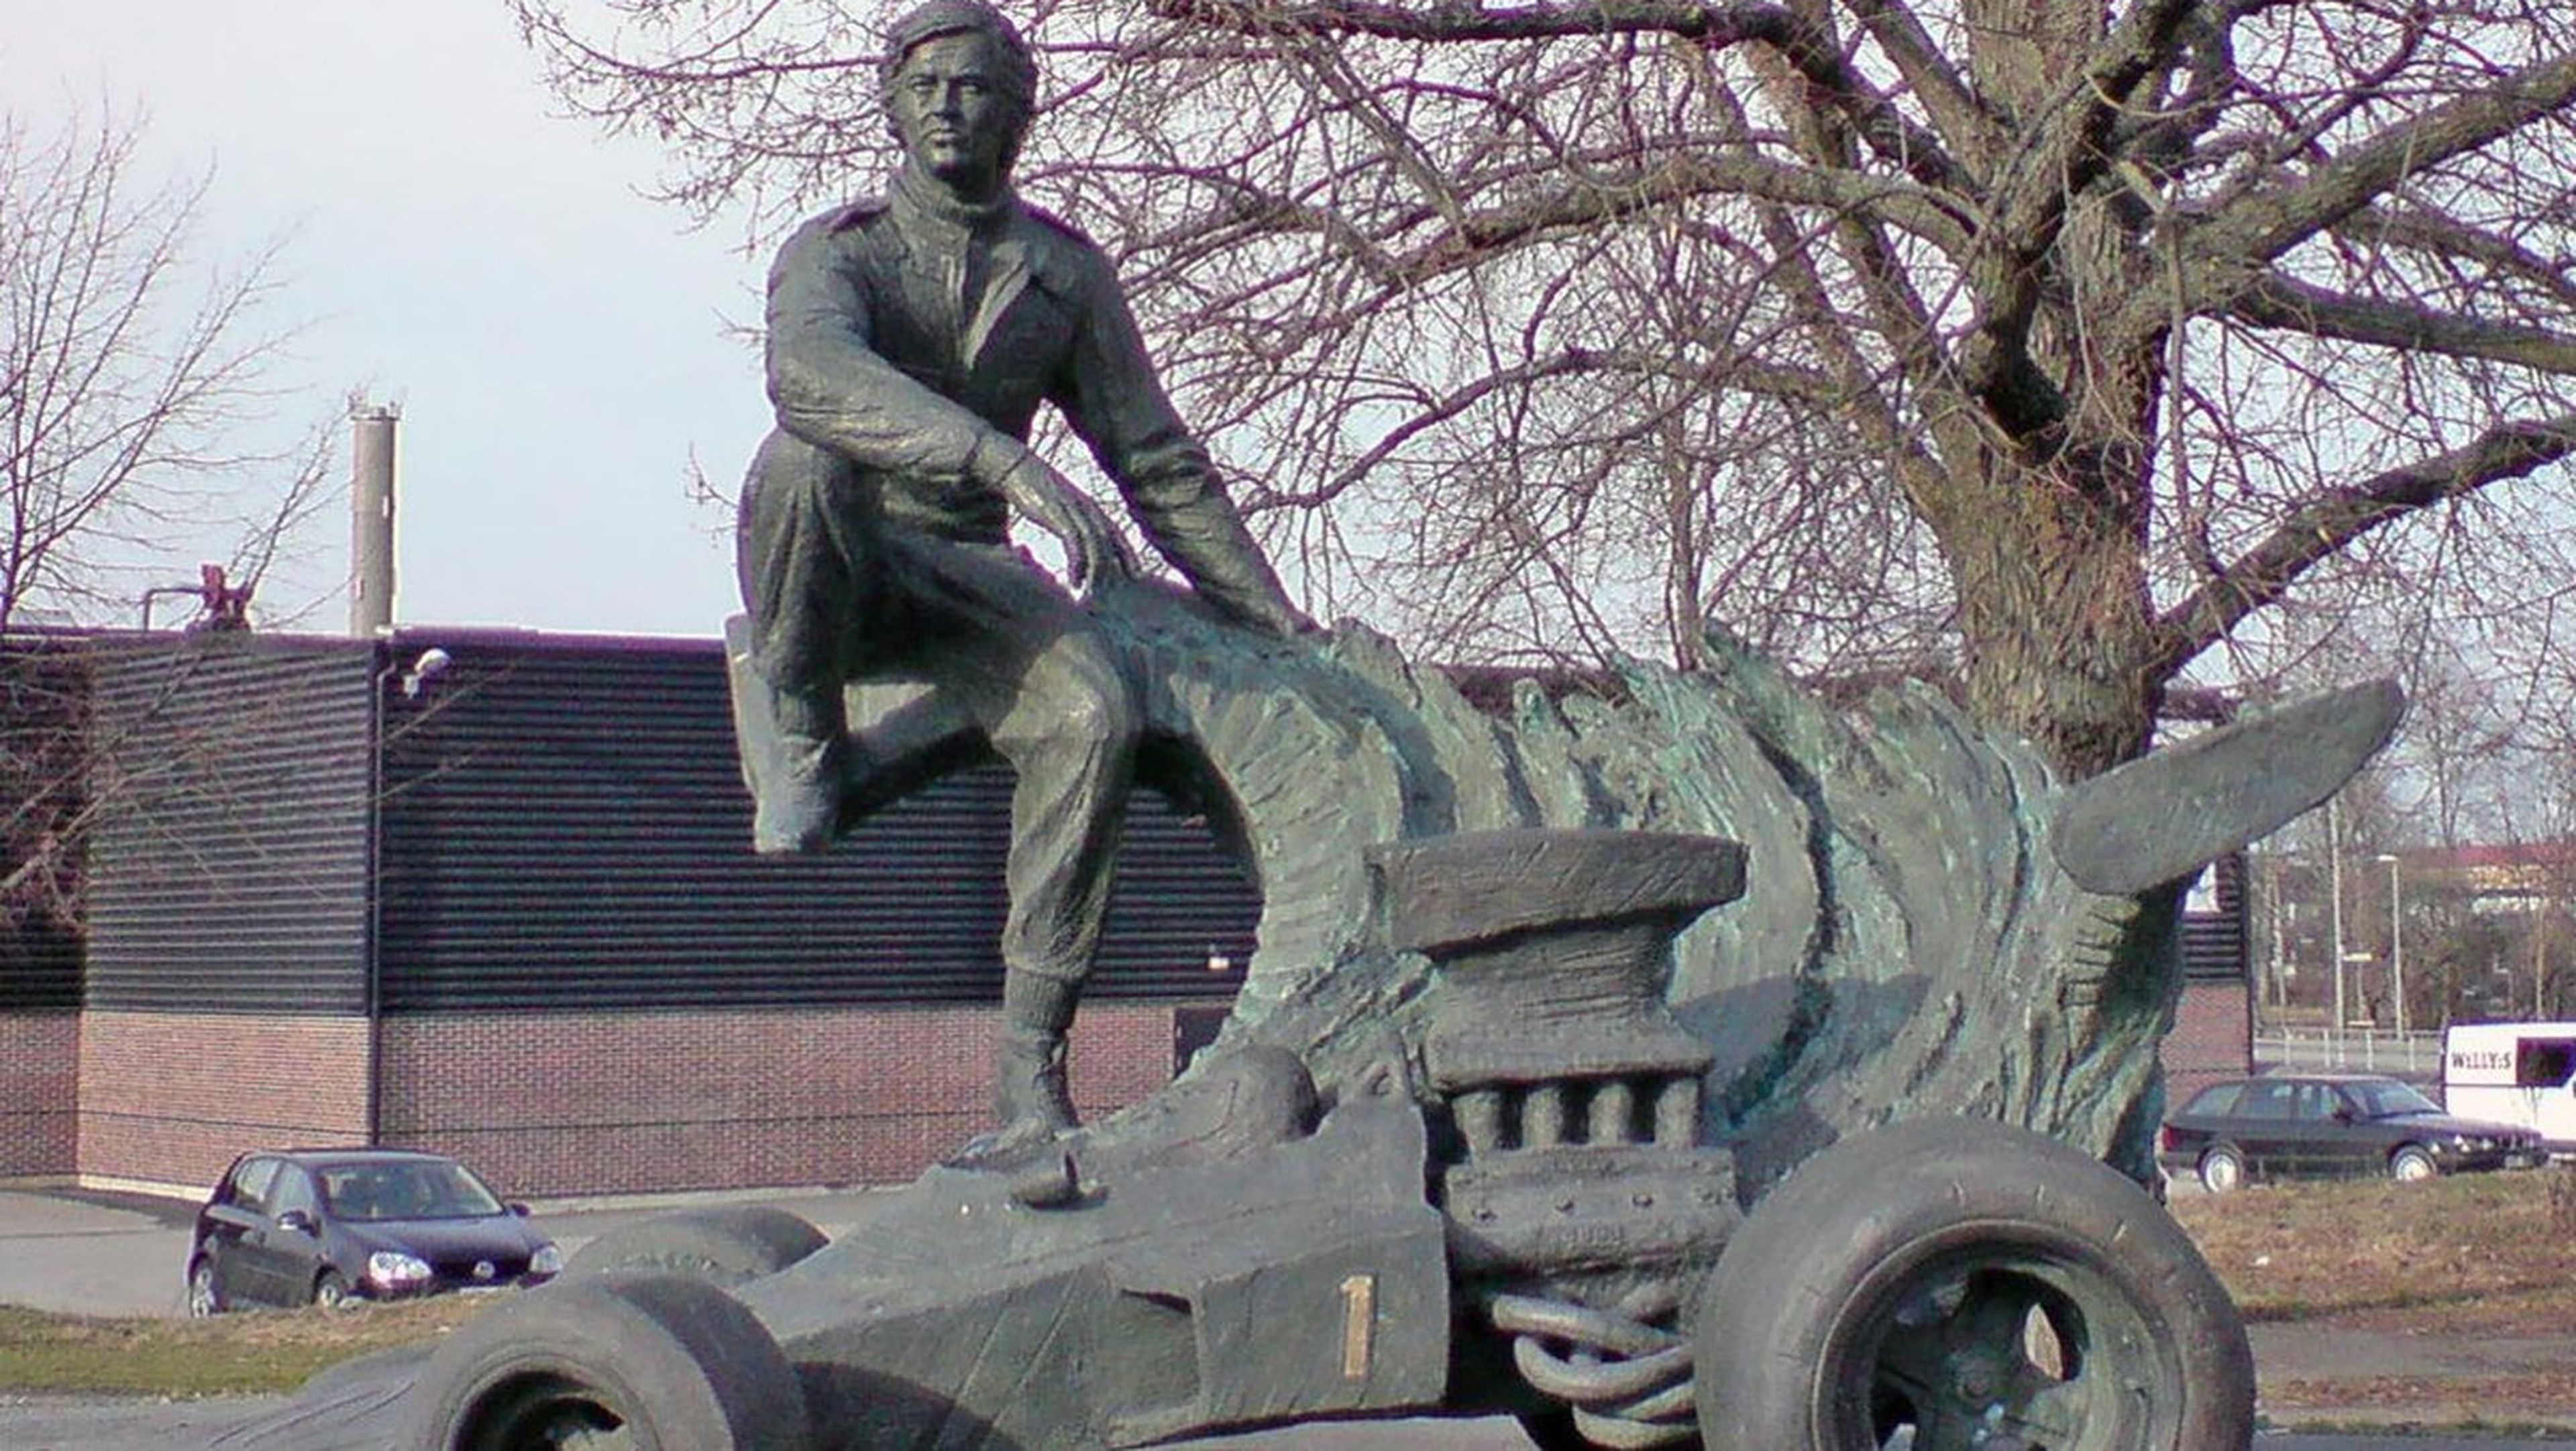 Ronnie Peterson in Almby, Örebro, Sweden